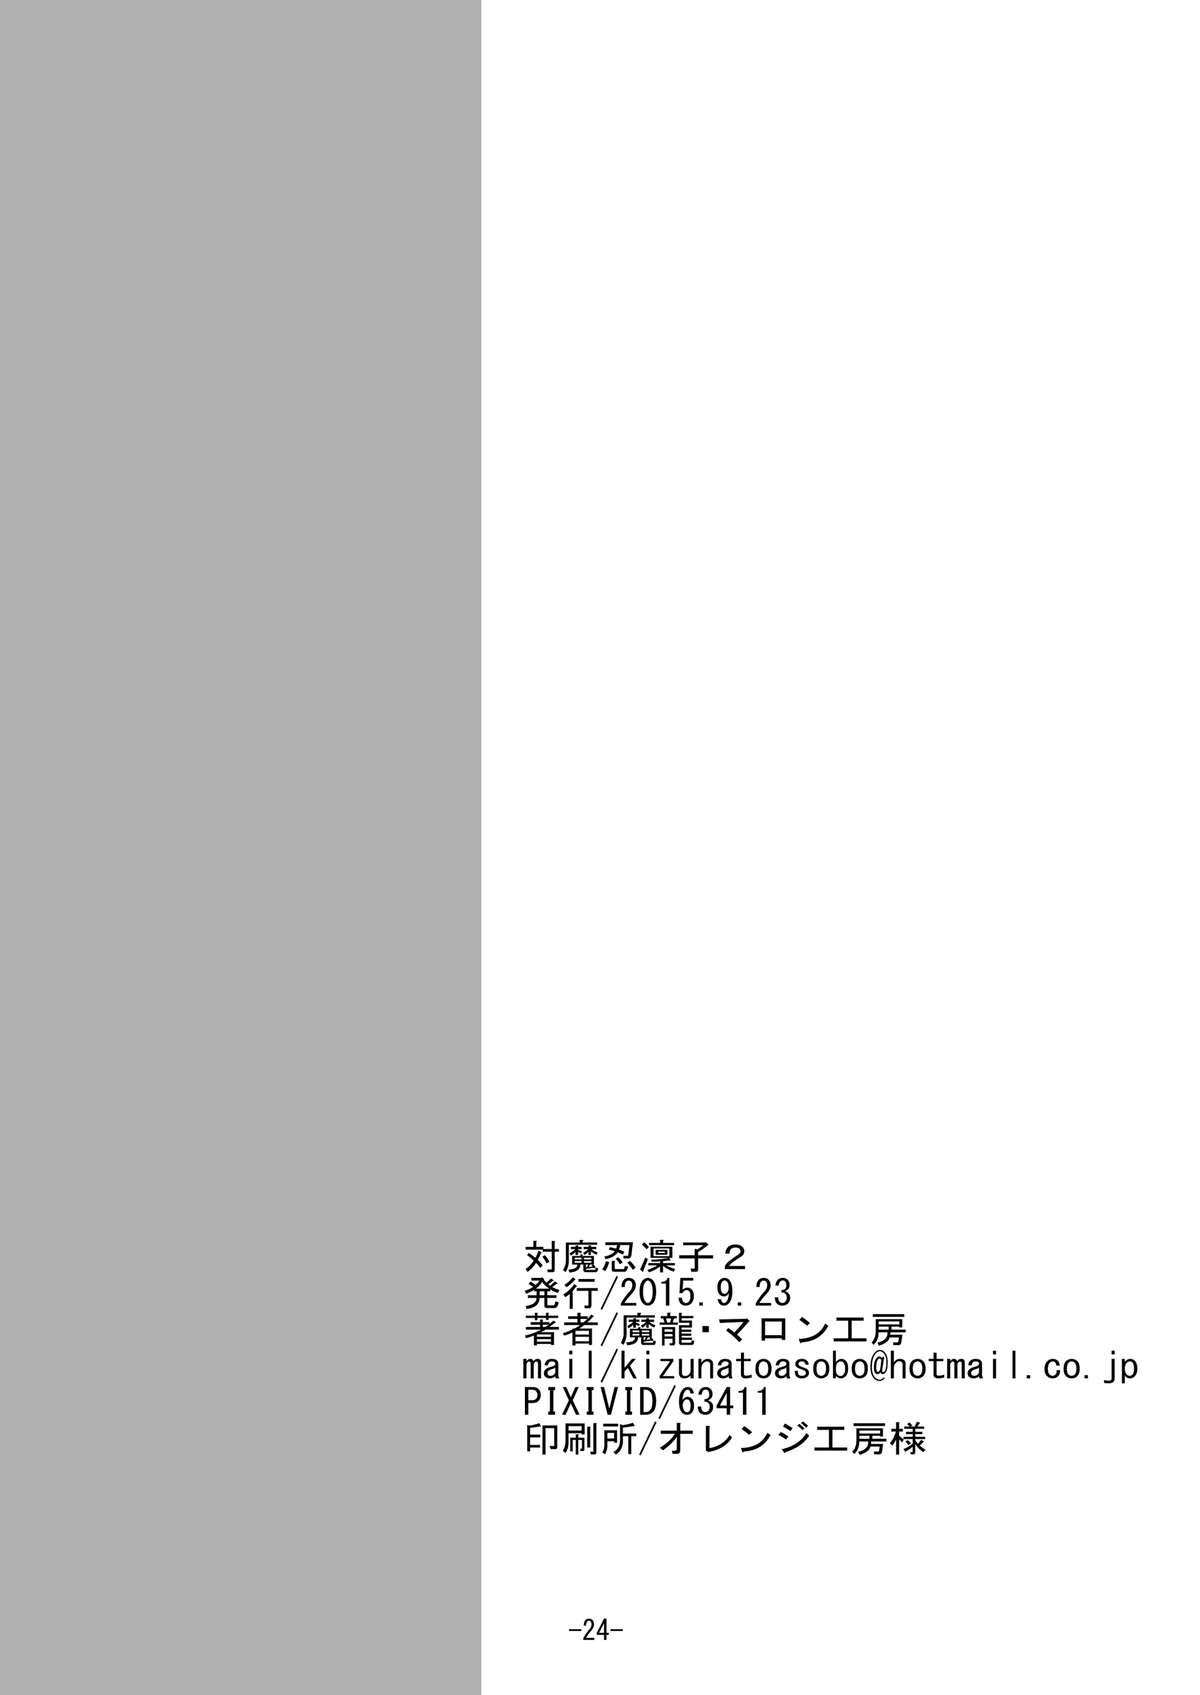 [マロン工房] 対魔忍凜子2 (対魔忍ユキカゼ) [DL版]